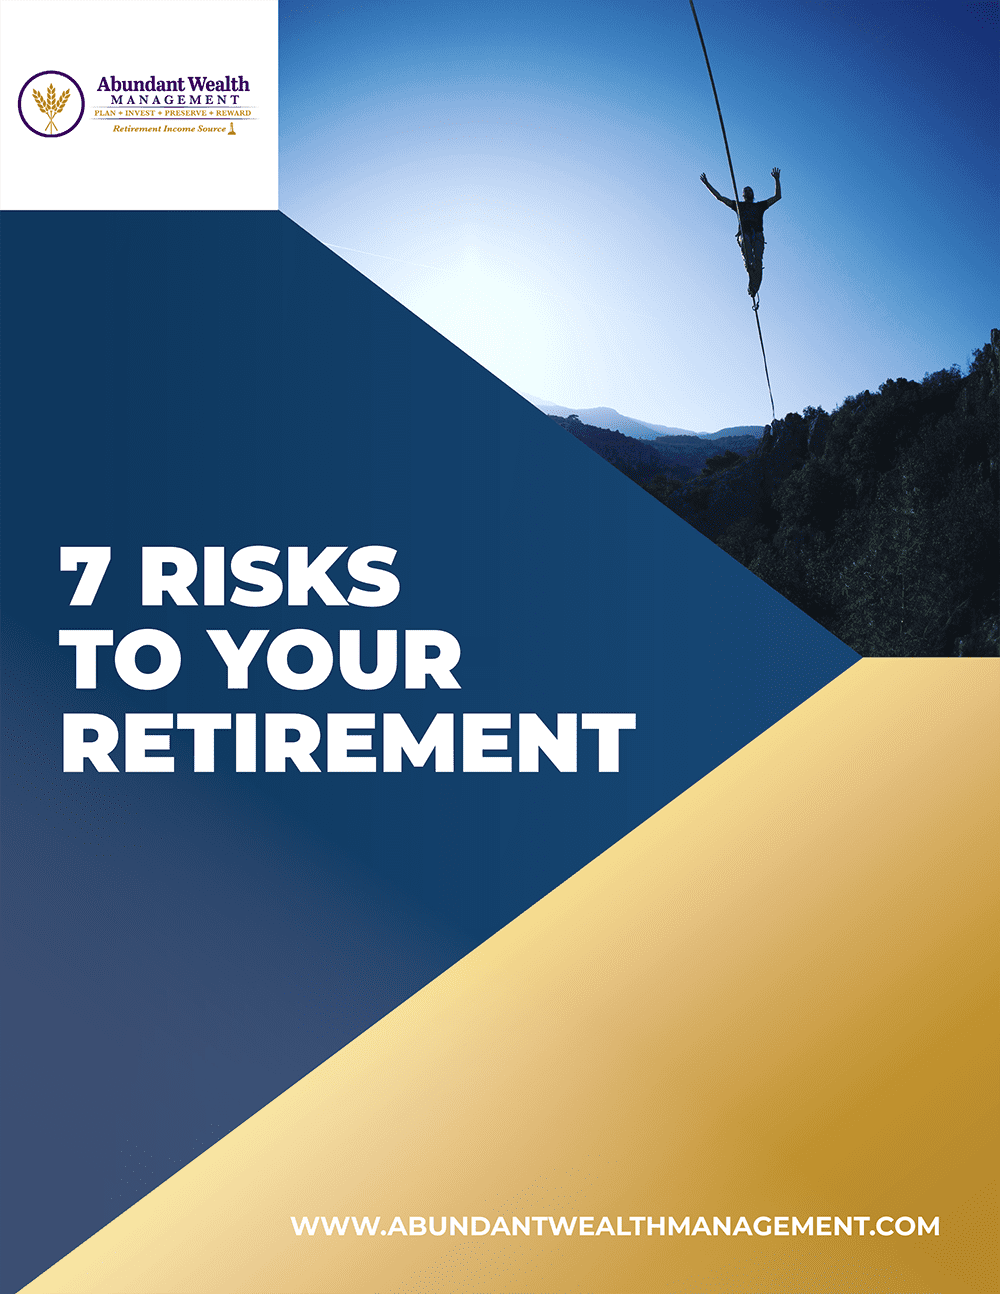 Abundant Wealth Management - 7 Risks to Your Retirement-1